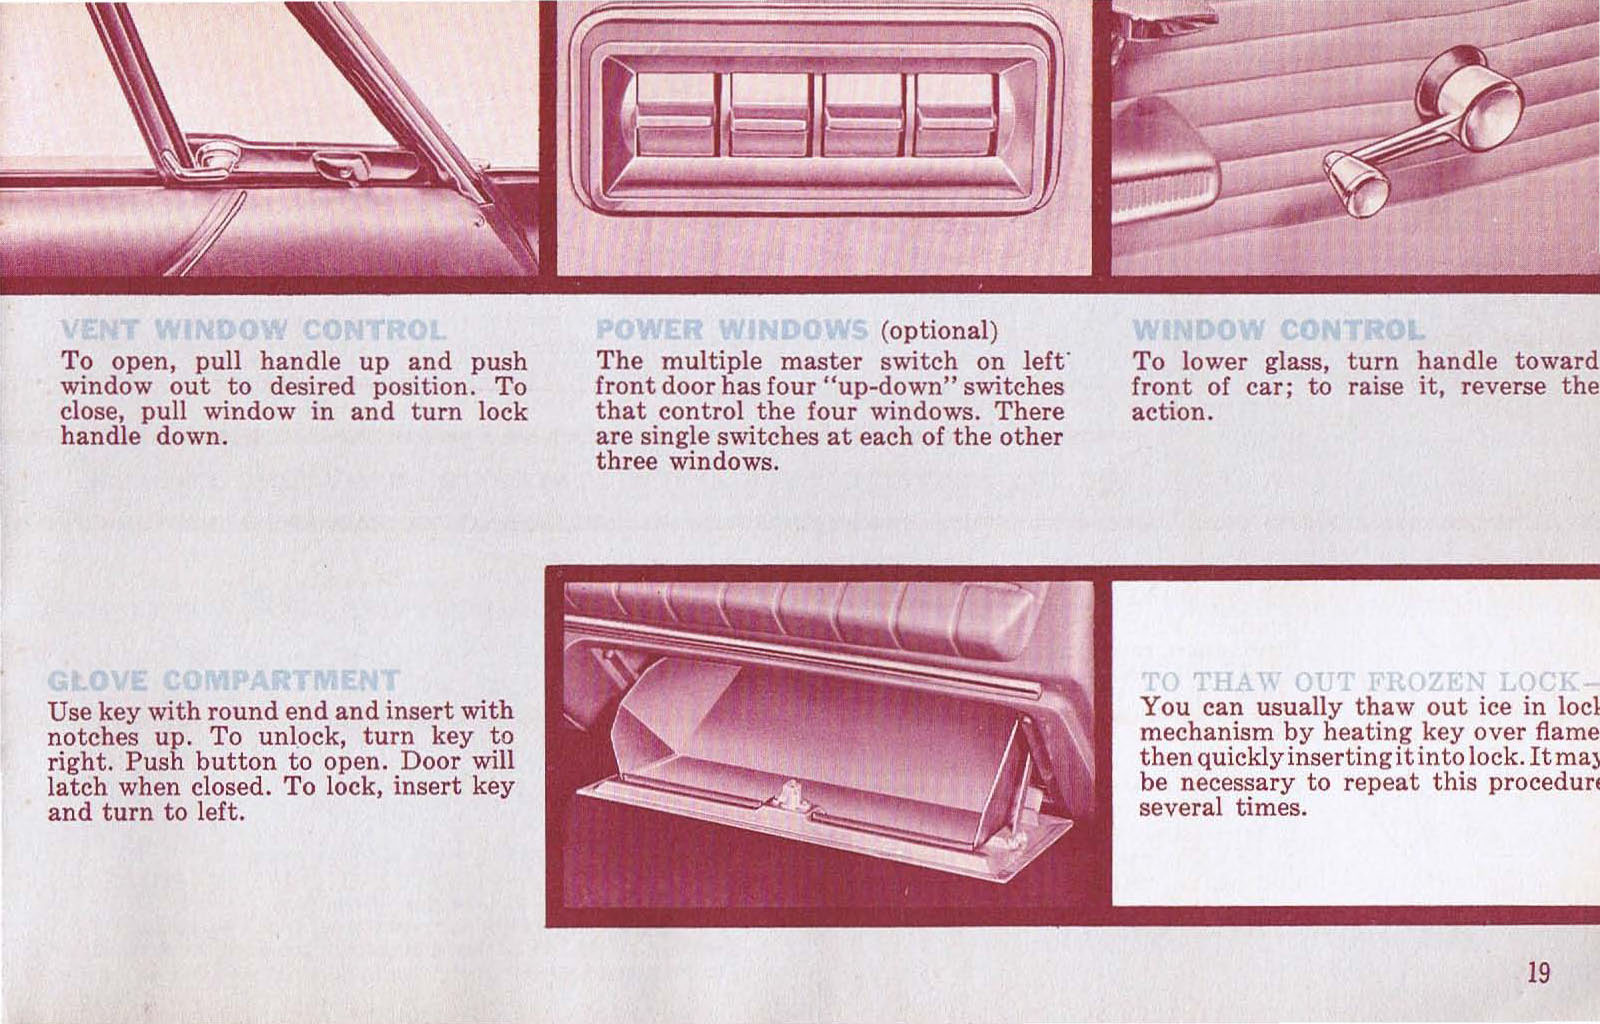 n_1962 Plymouth Owners Manual-19.jpg